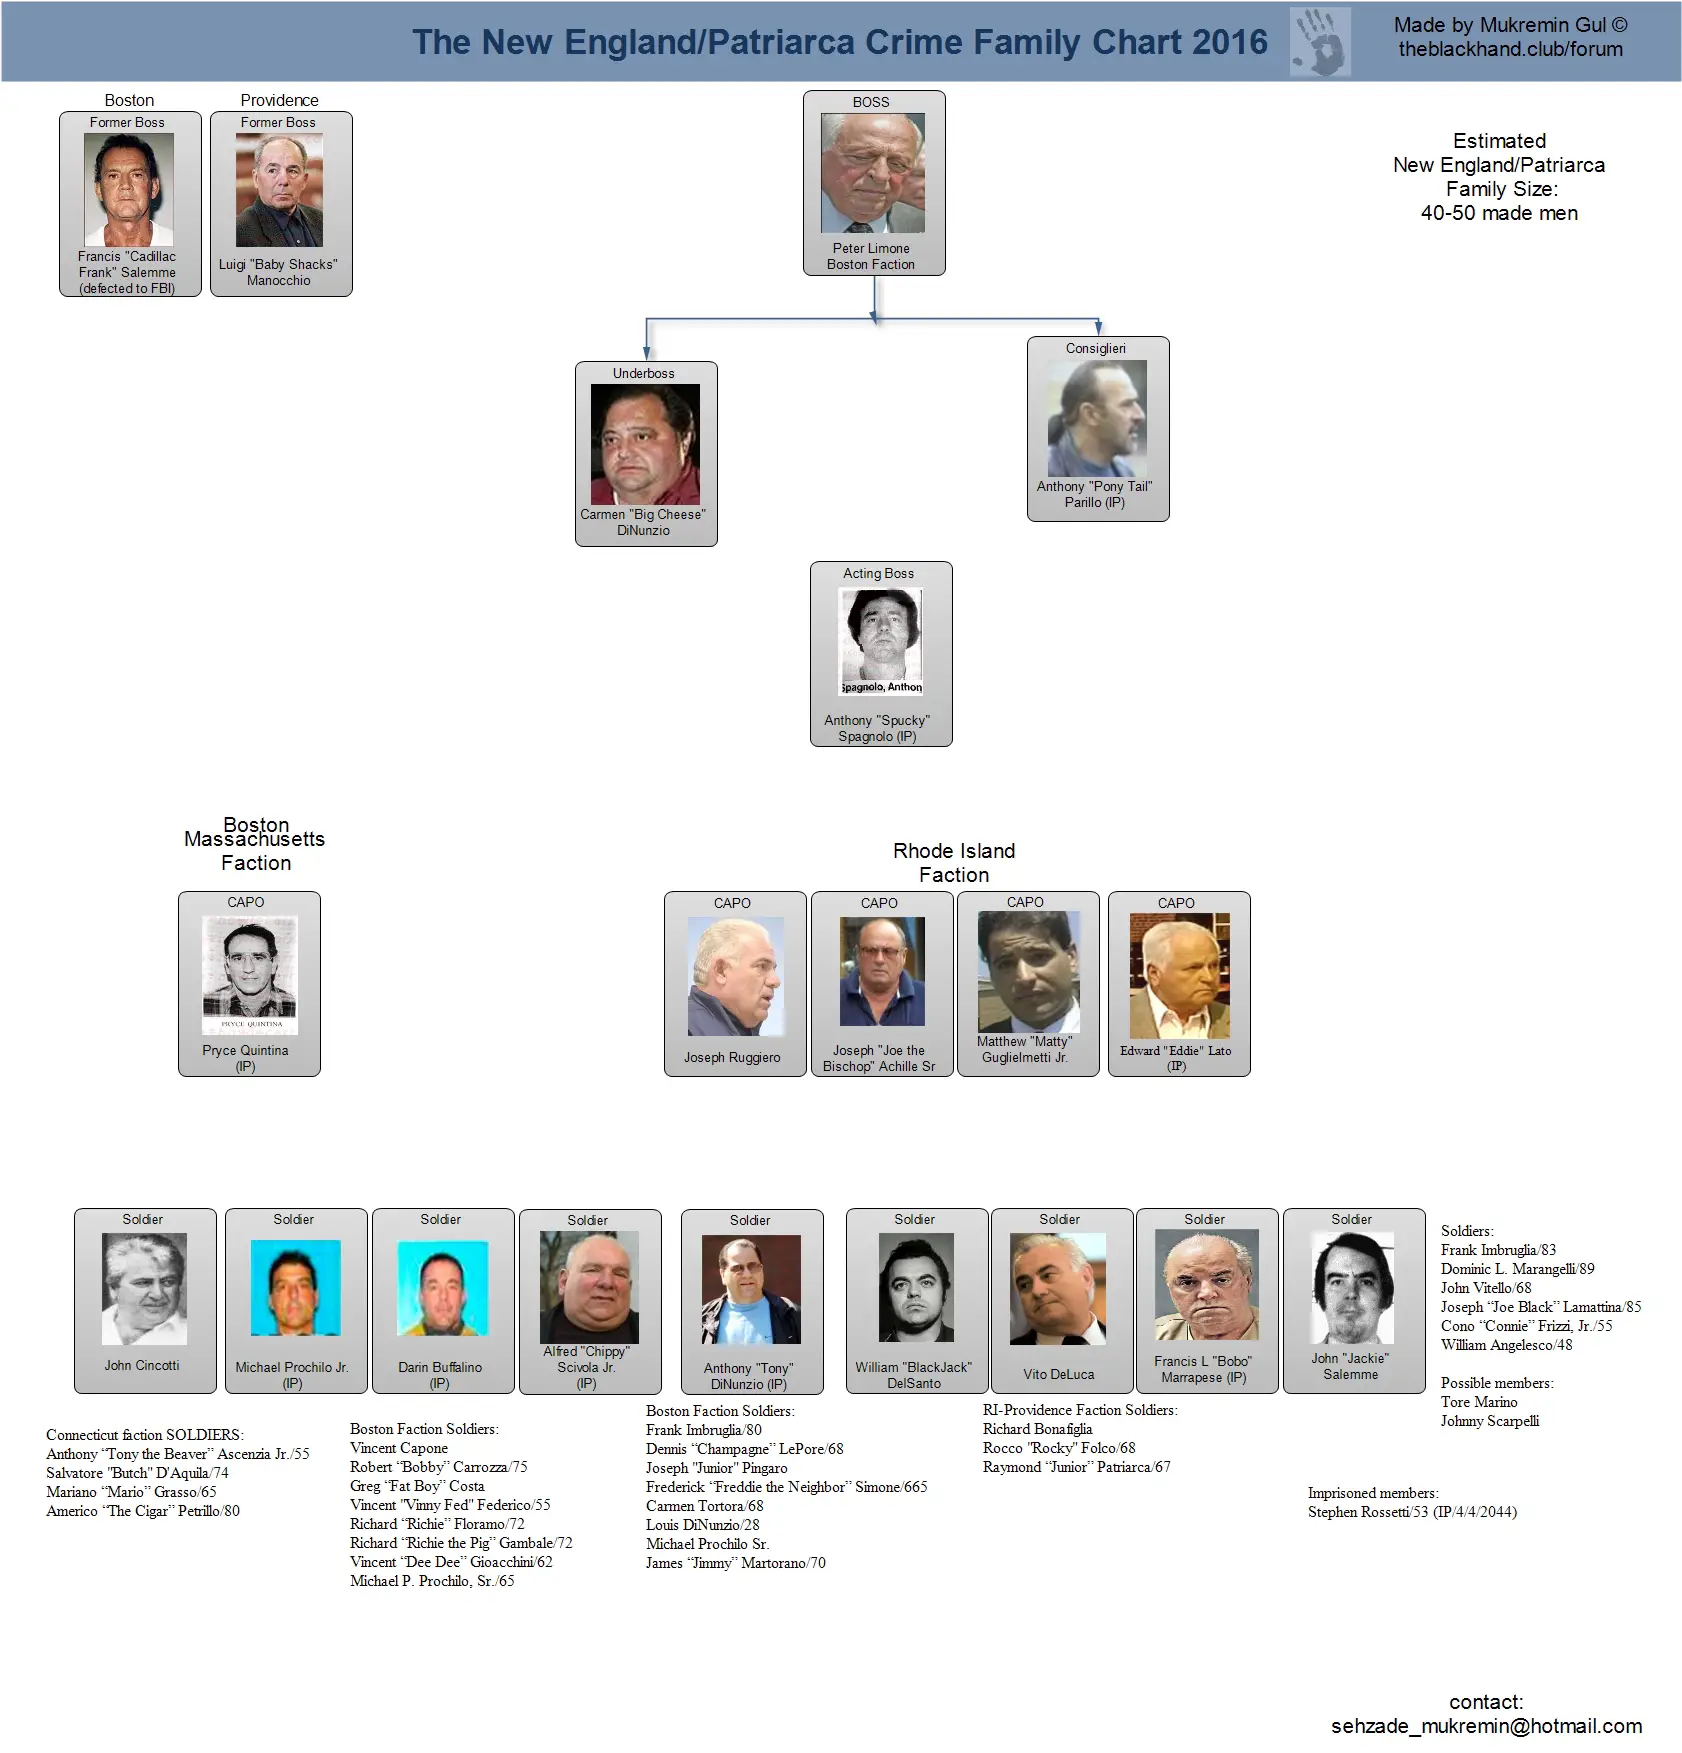 Crime Family Chart